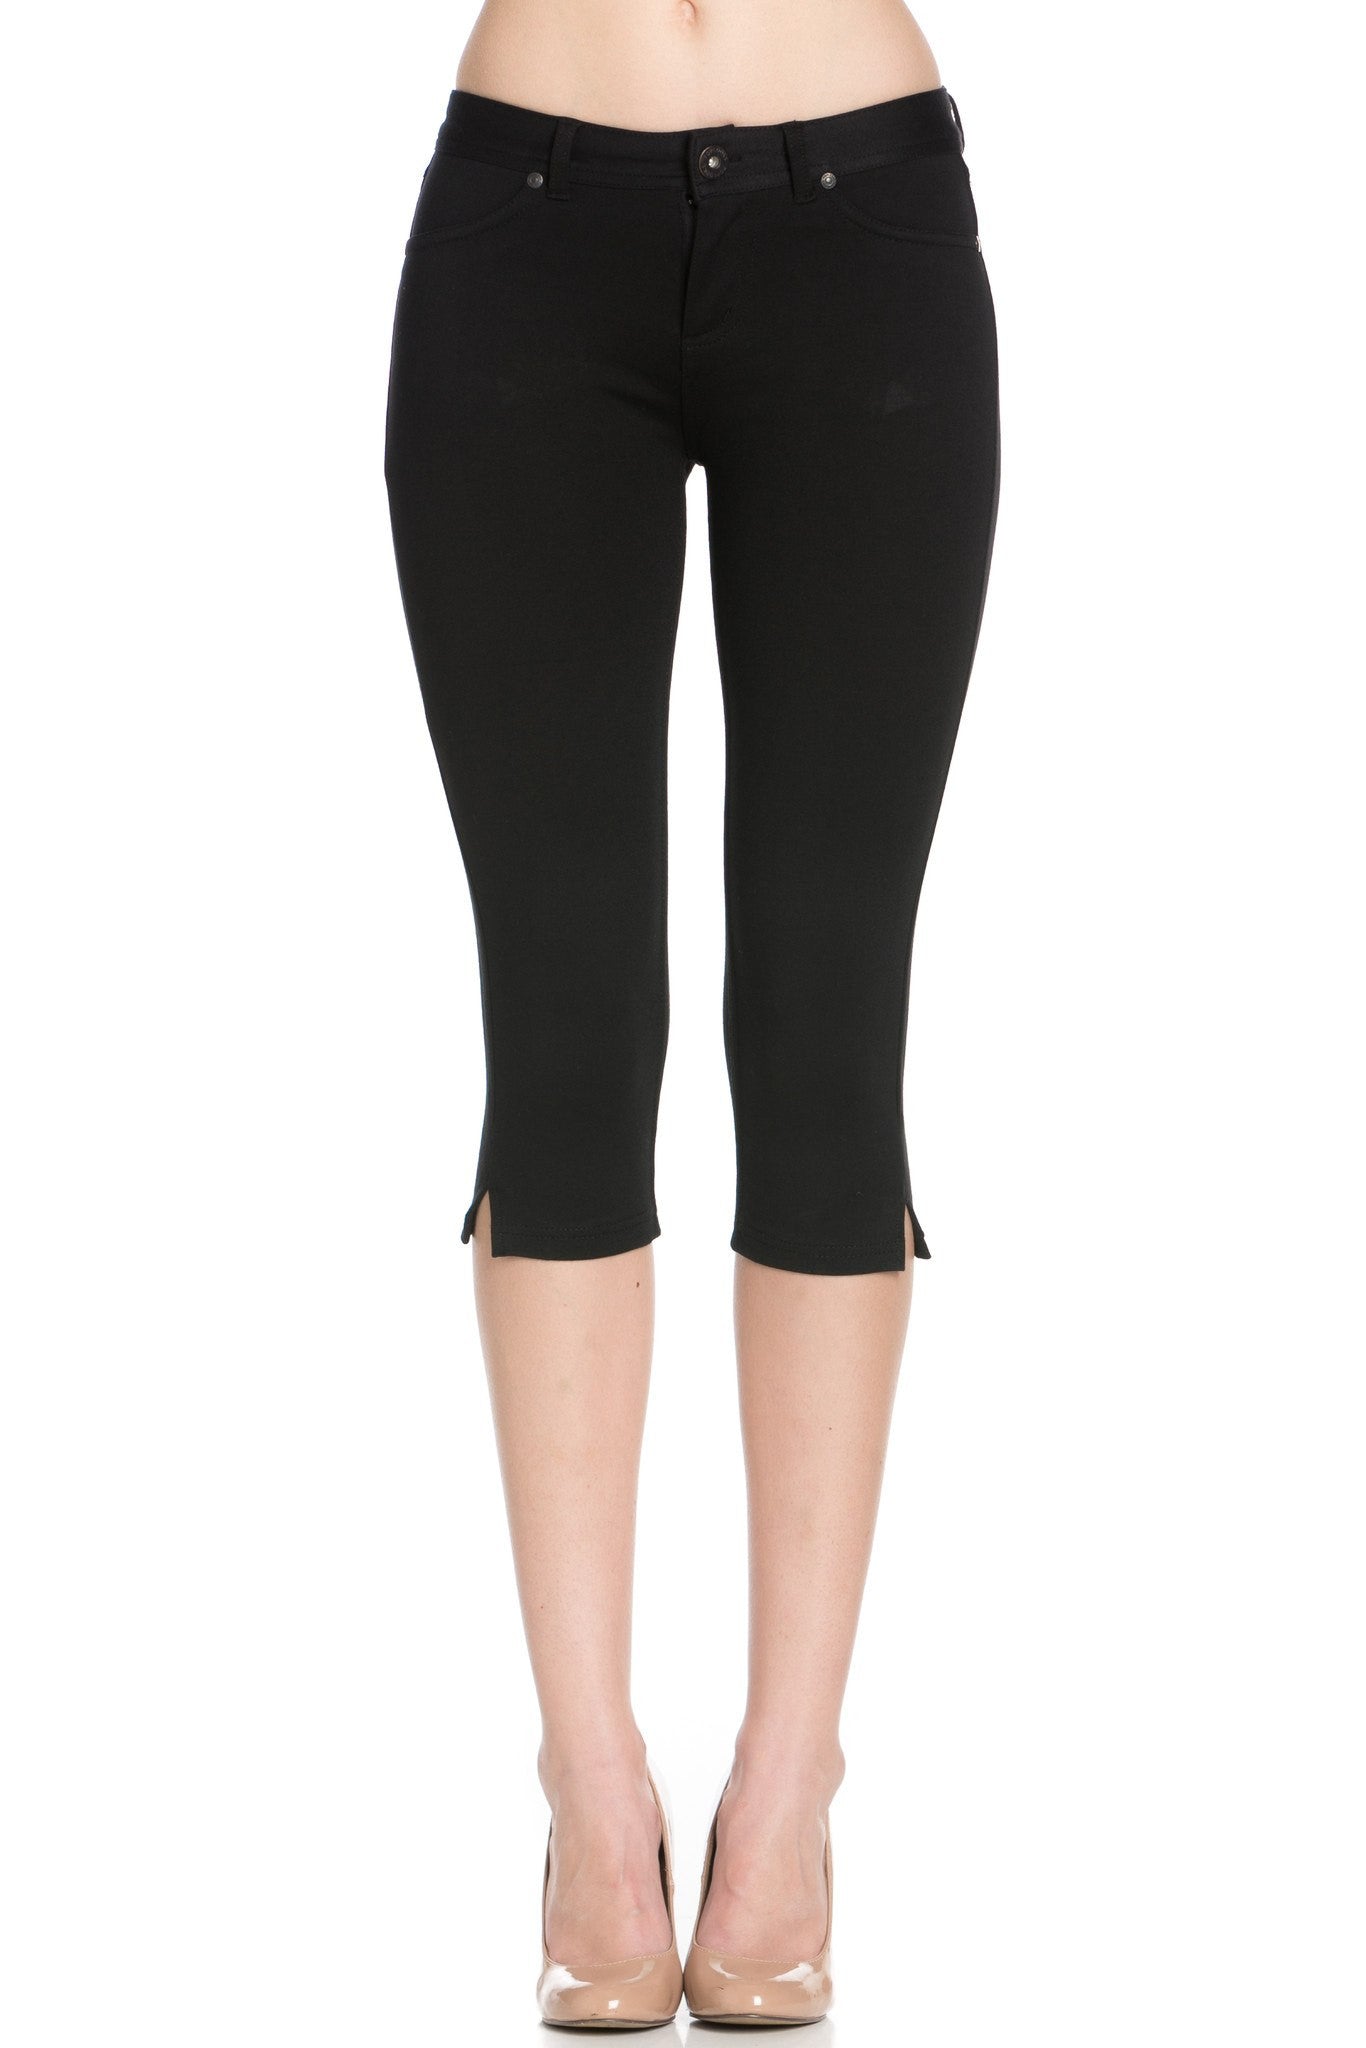 Poplooks Women's 4 Way Stretchy Ponte Knit Capri Skinny Jeans (Black)